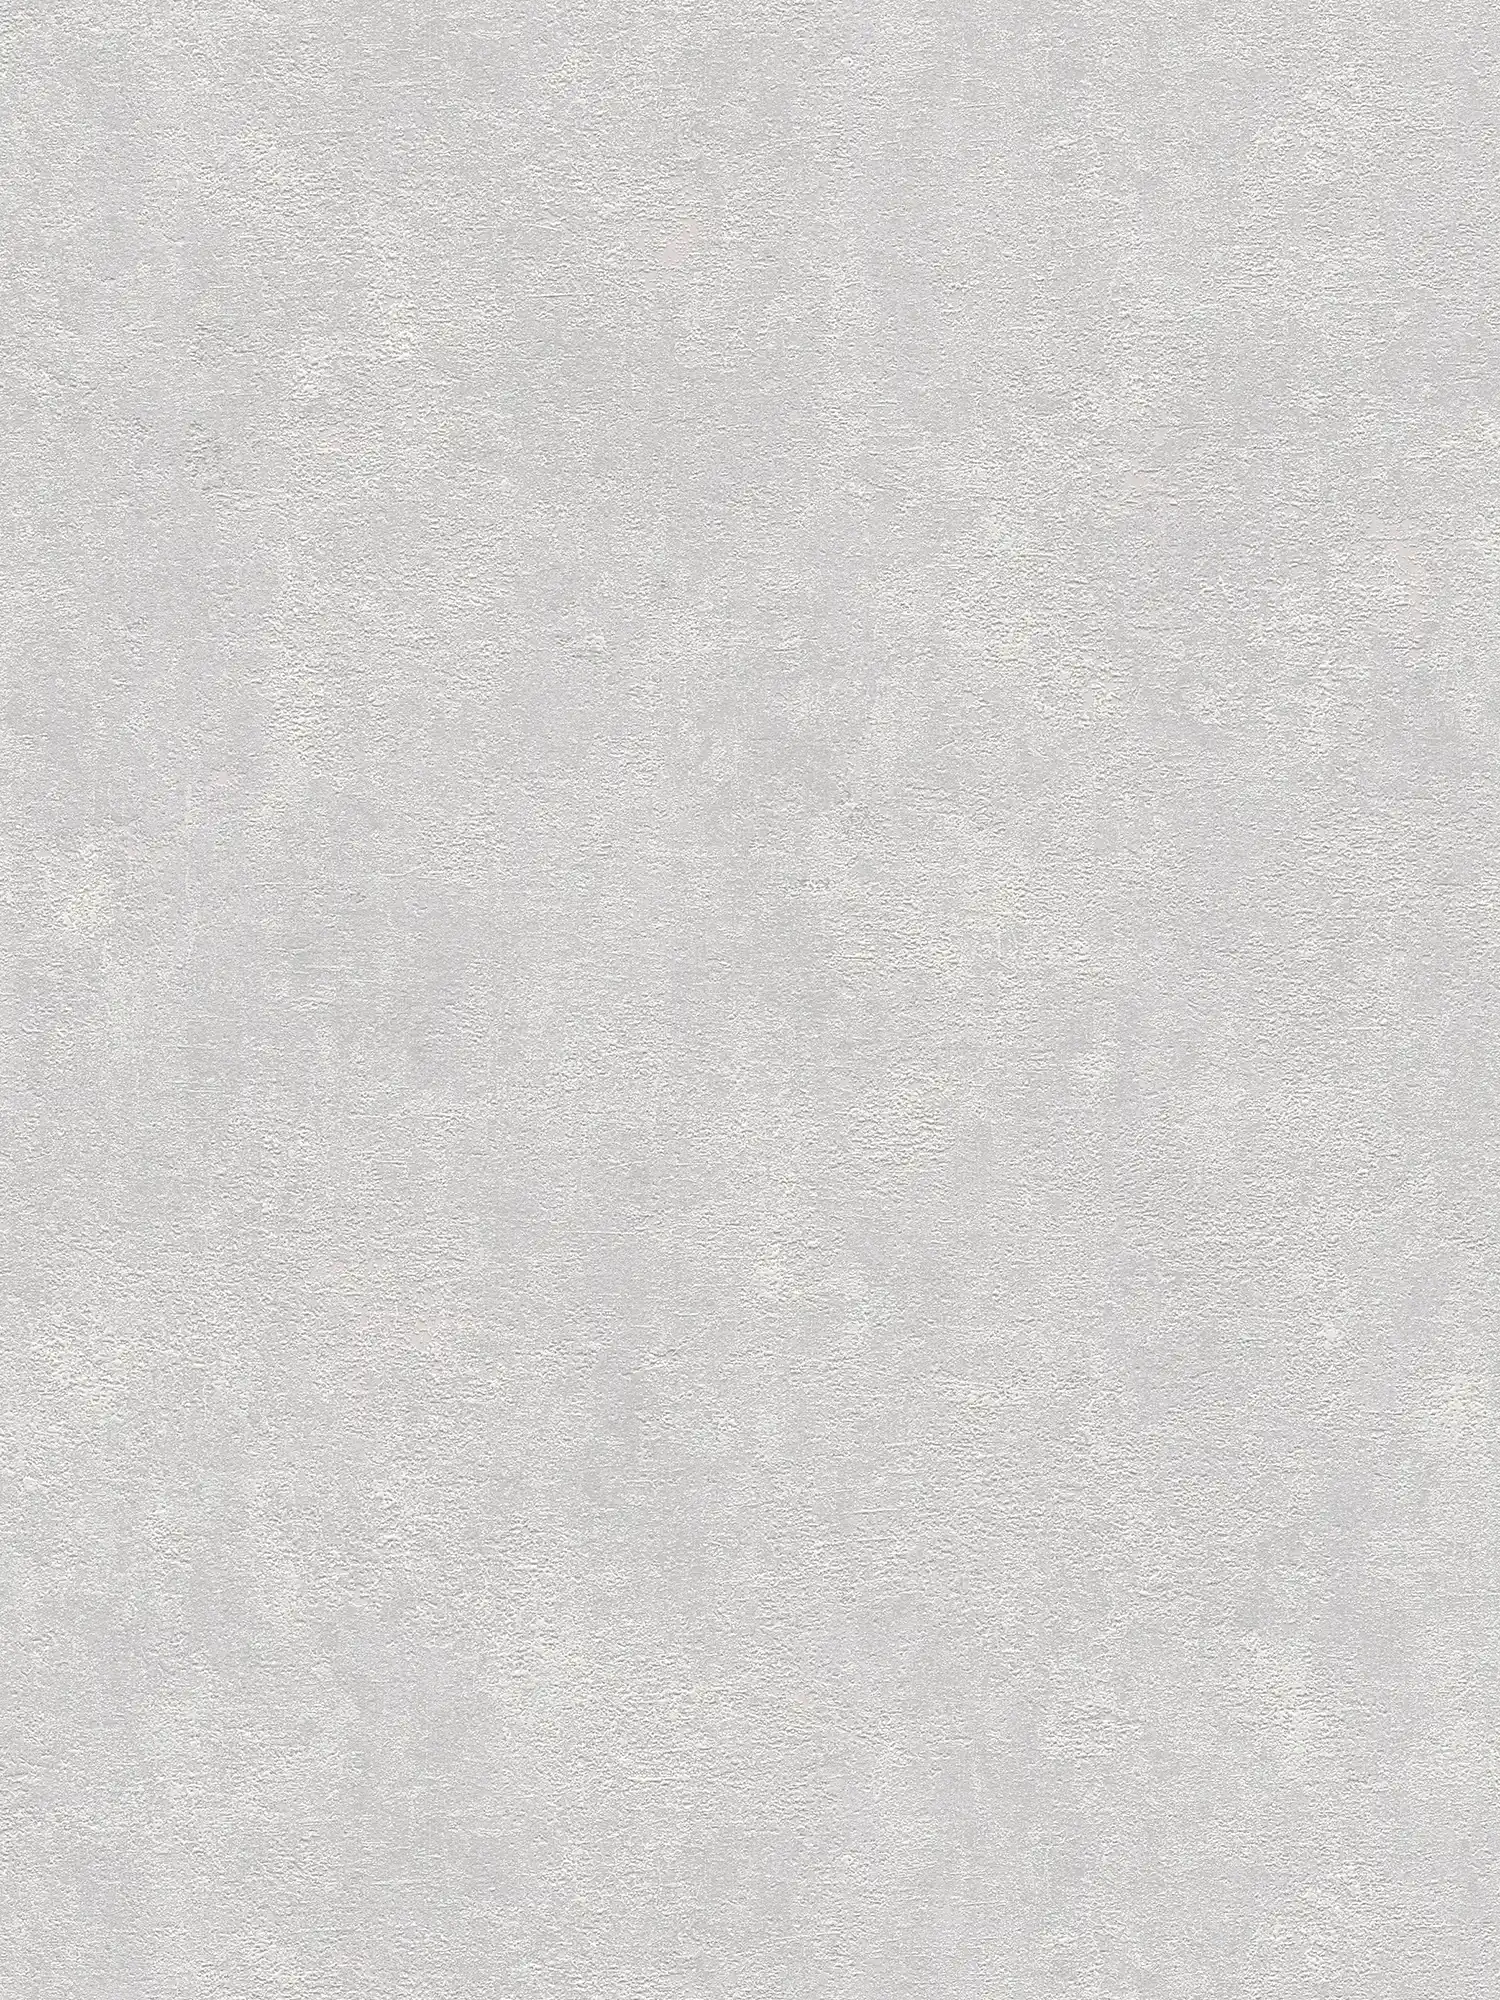 papel pintado estructura de yeso, liso y satinado - gris claro
